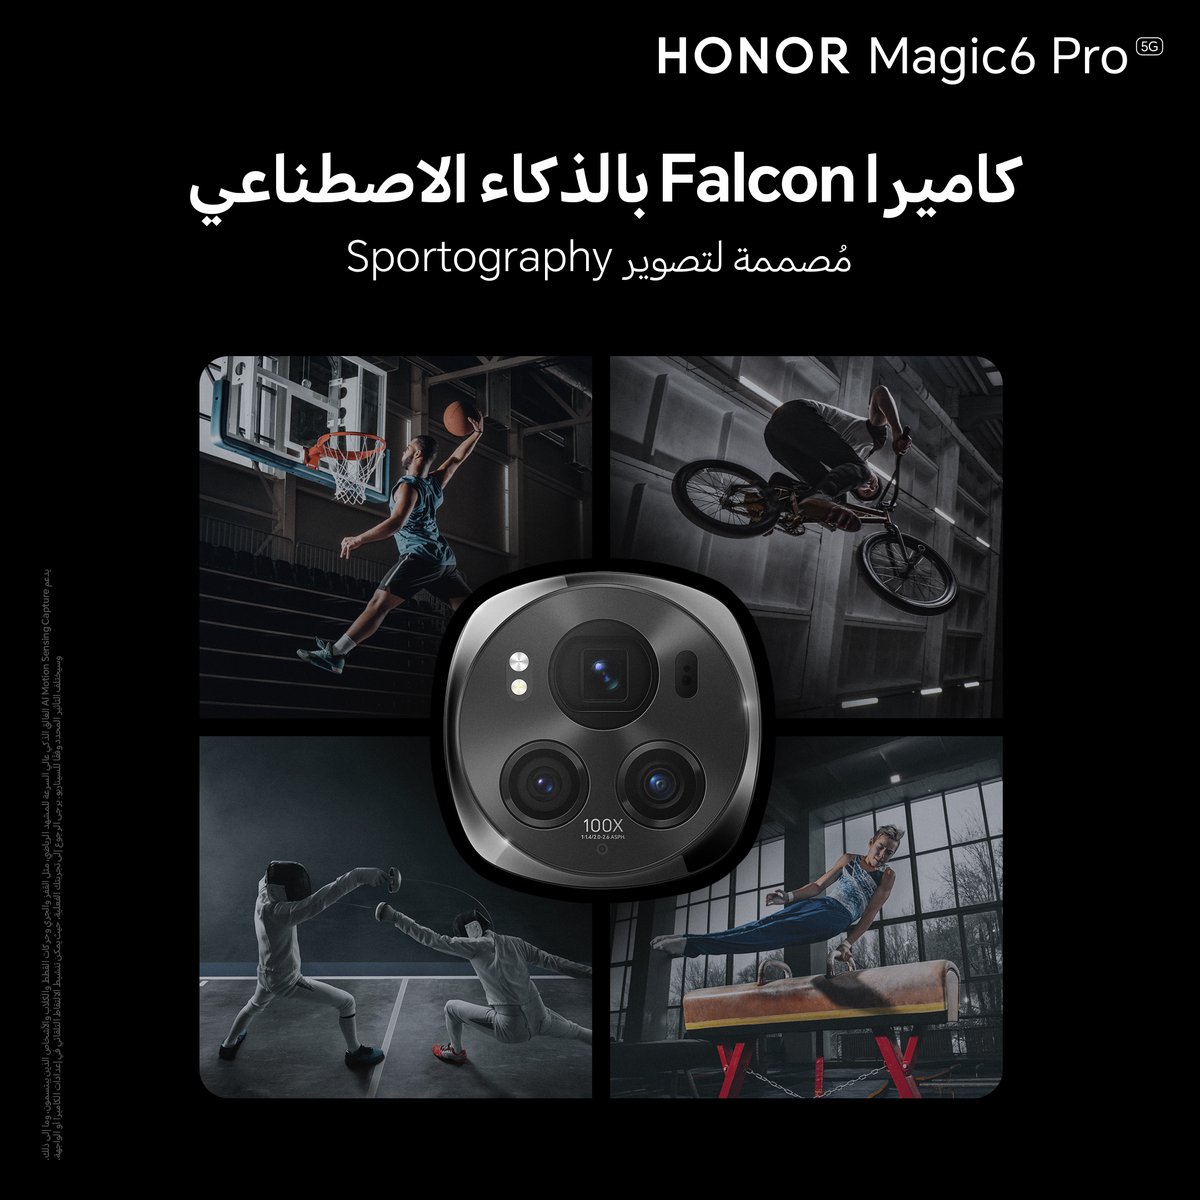 احصل على مستوى جديد للتصوير الرياضي مع #HONORMagic6 Pro و التقط الحركات السريعة بوضوح تام . اشتر الآن بـ3999 ريال واحصل على ساعة 3 HONOR WATCH GS مجاناً. bit.ly/3TRoTPu